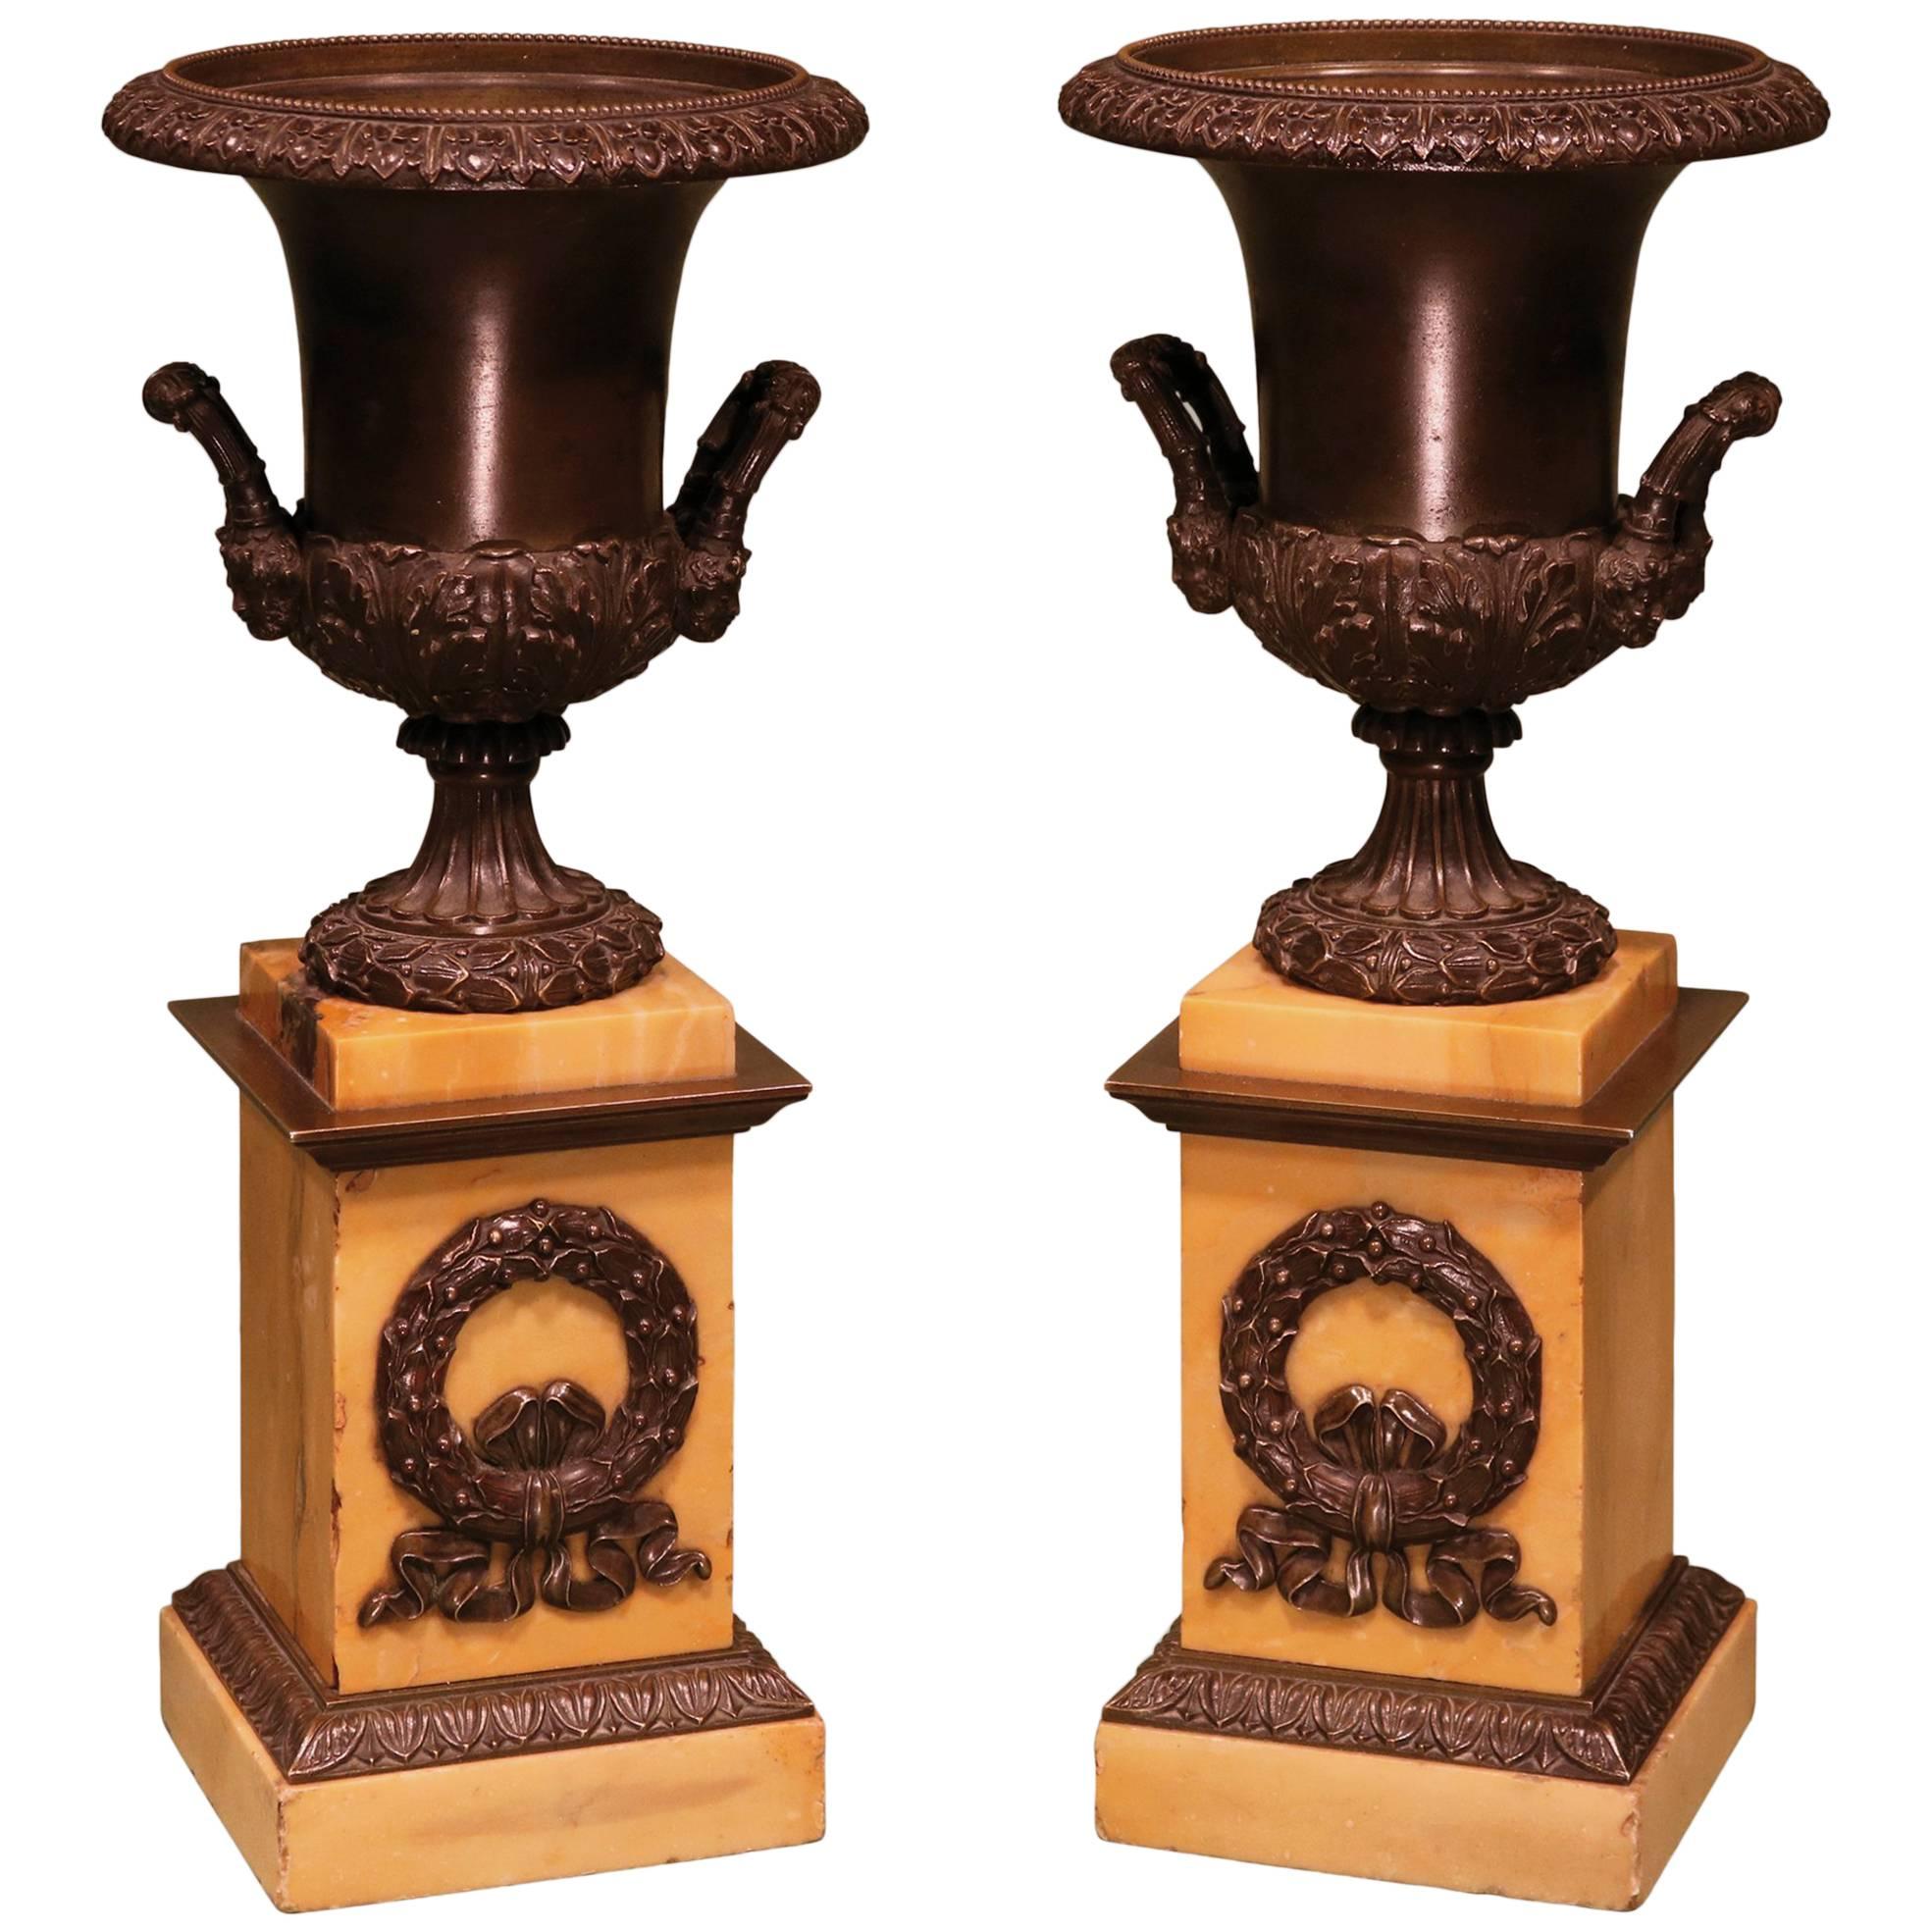 19th Century bronze campana-shaped urns